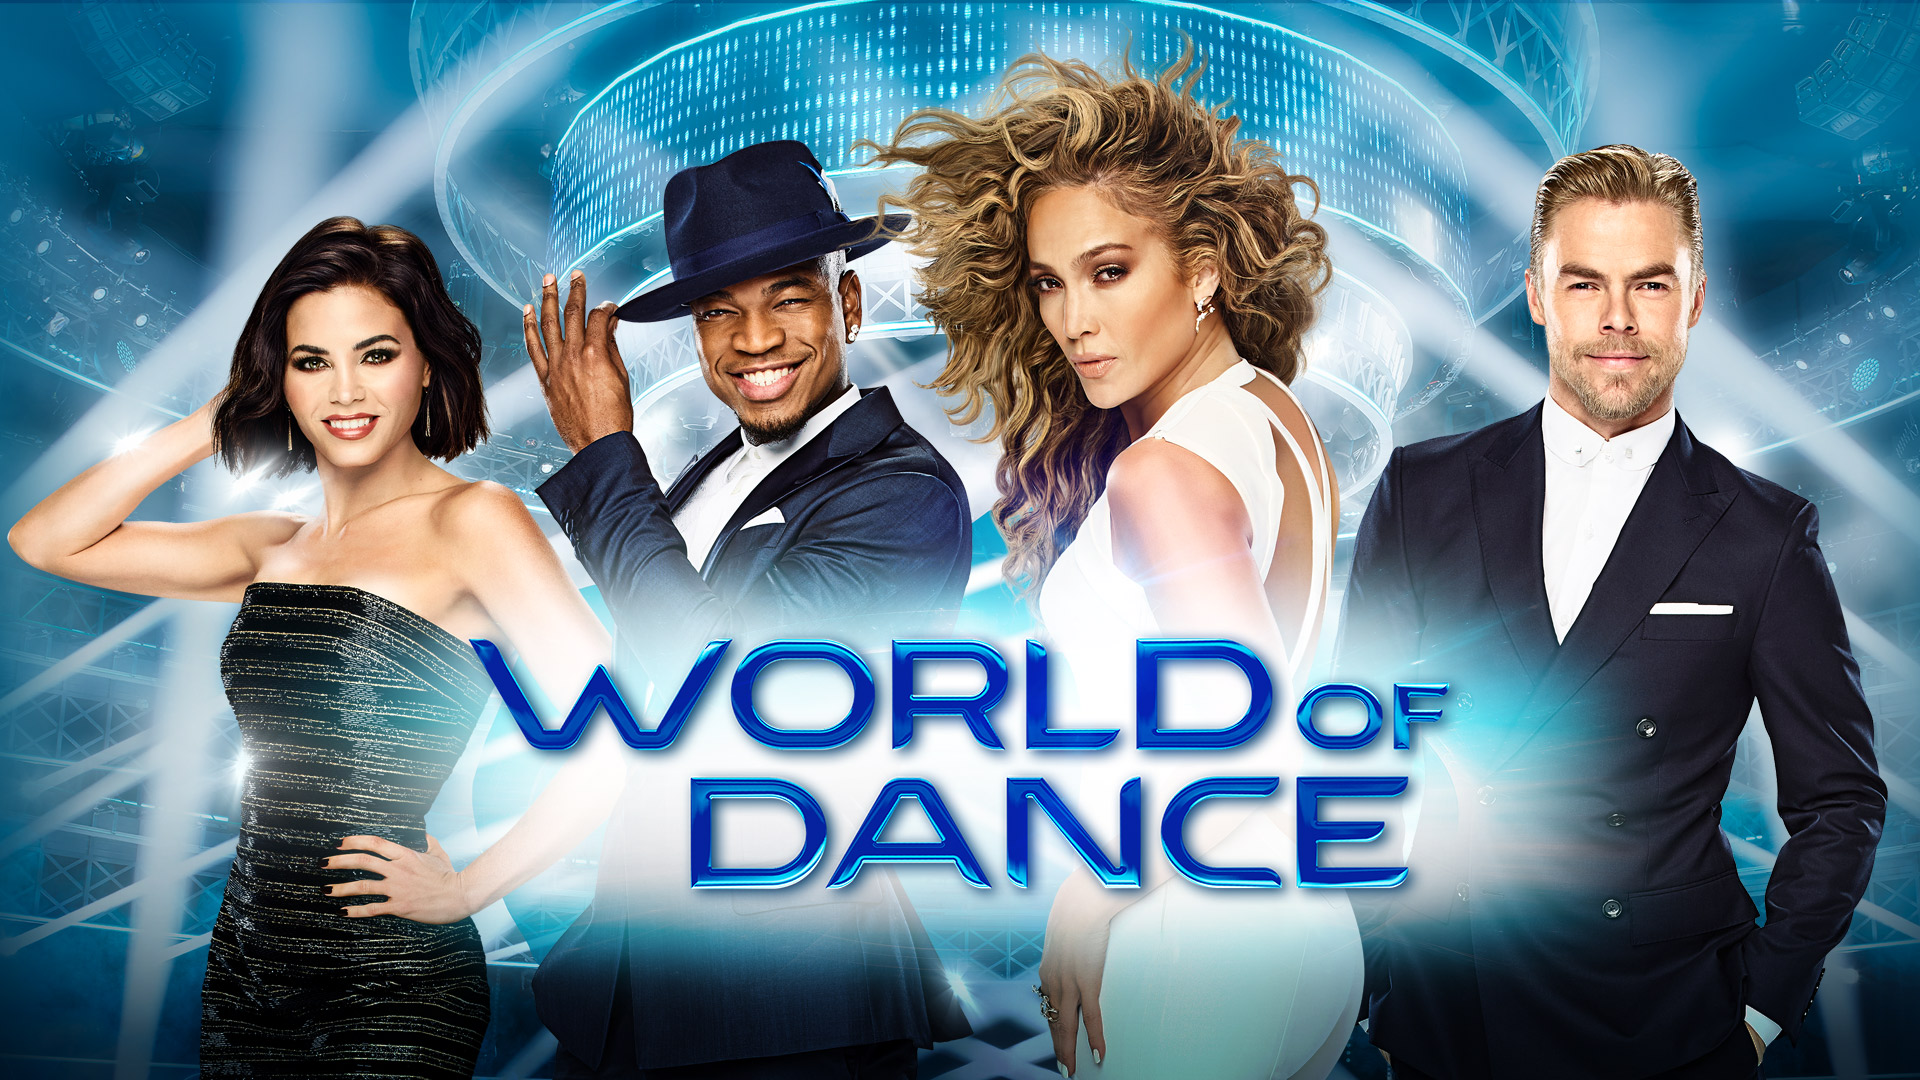 Watch World of Dance Episodes